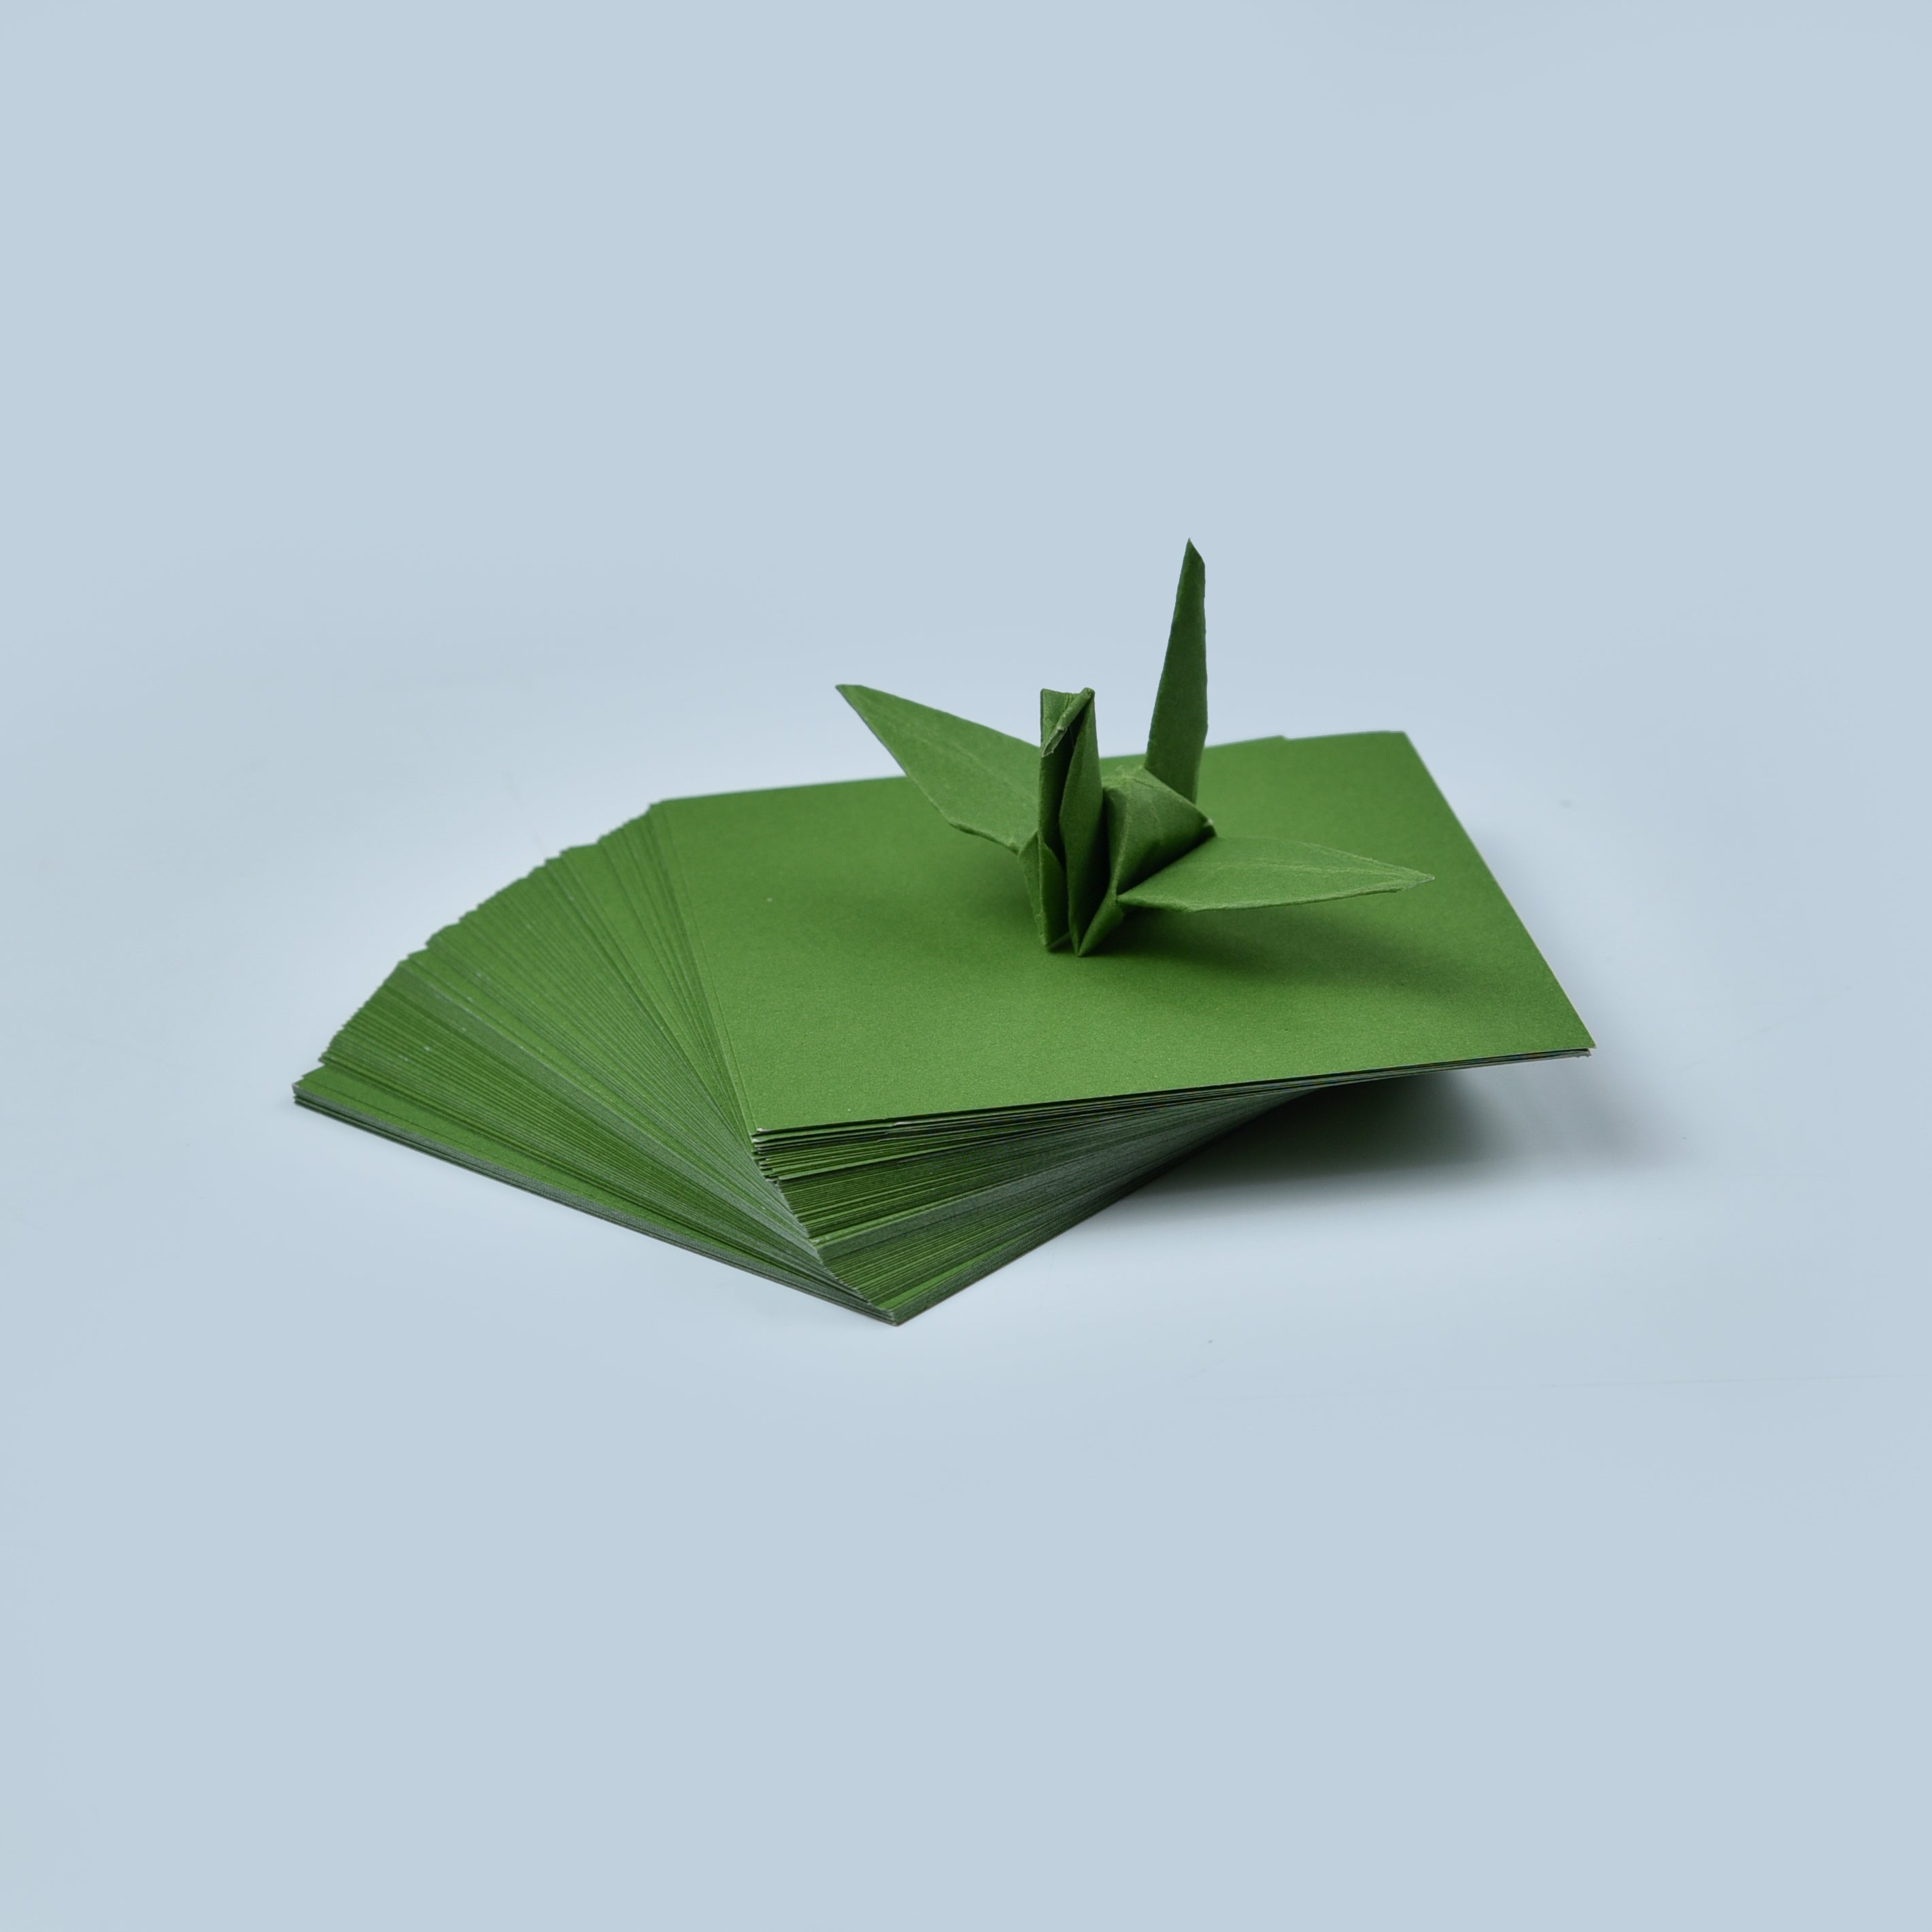 100 fogli di carta origami - 3x3 pollici - Confezione di carta quadrata per piegare, gru origami e decorazioni - S23